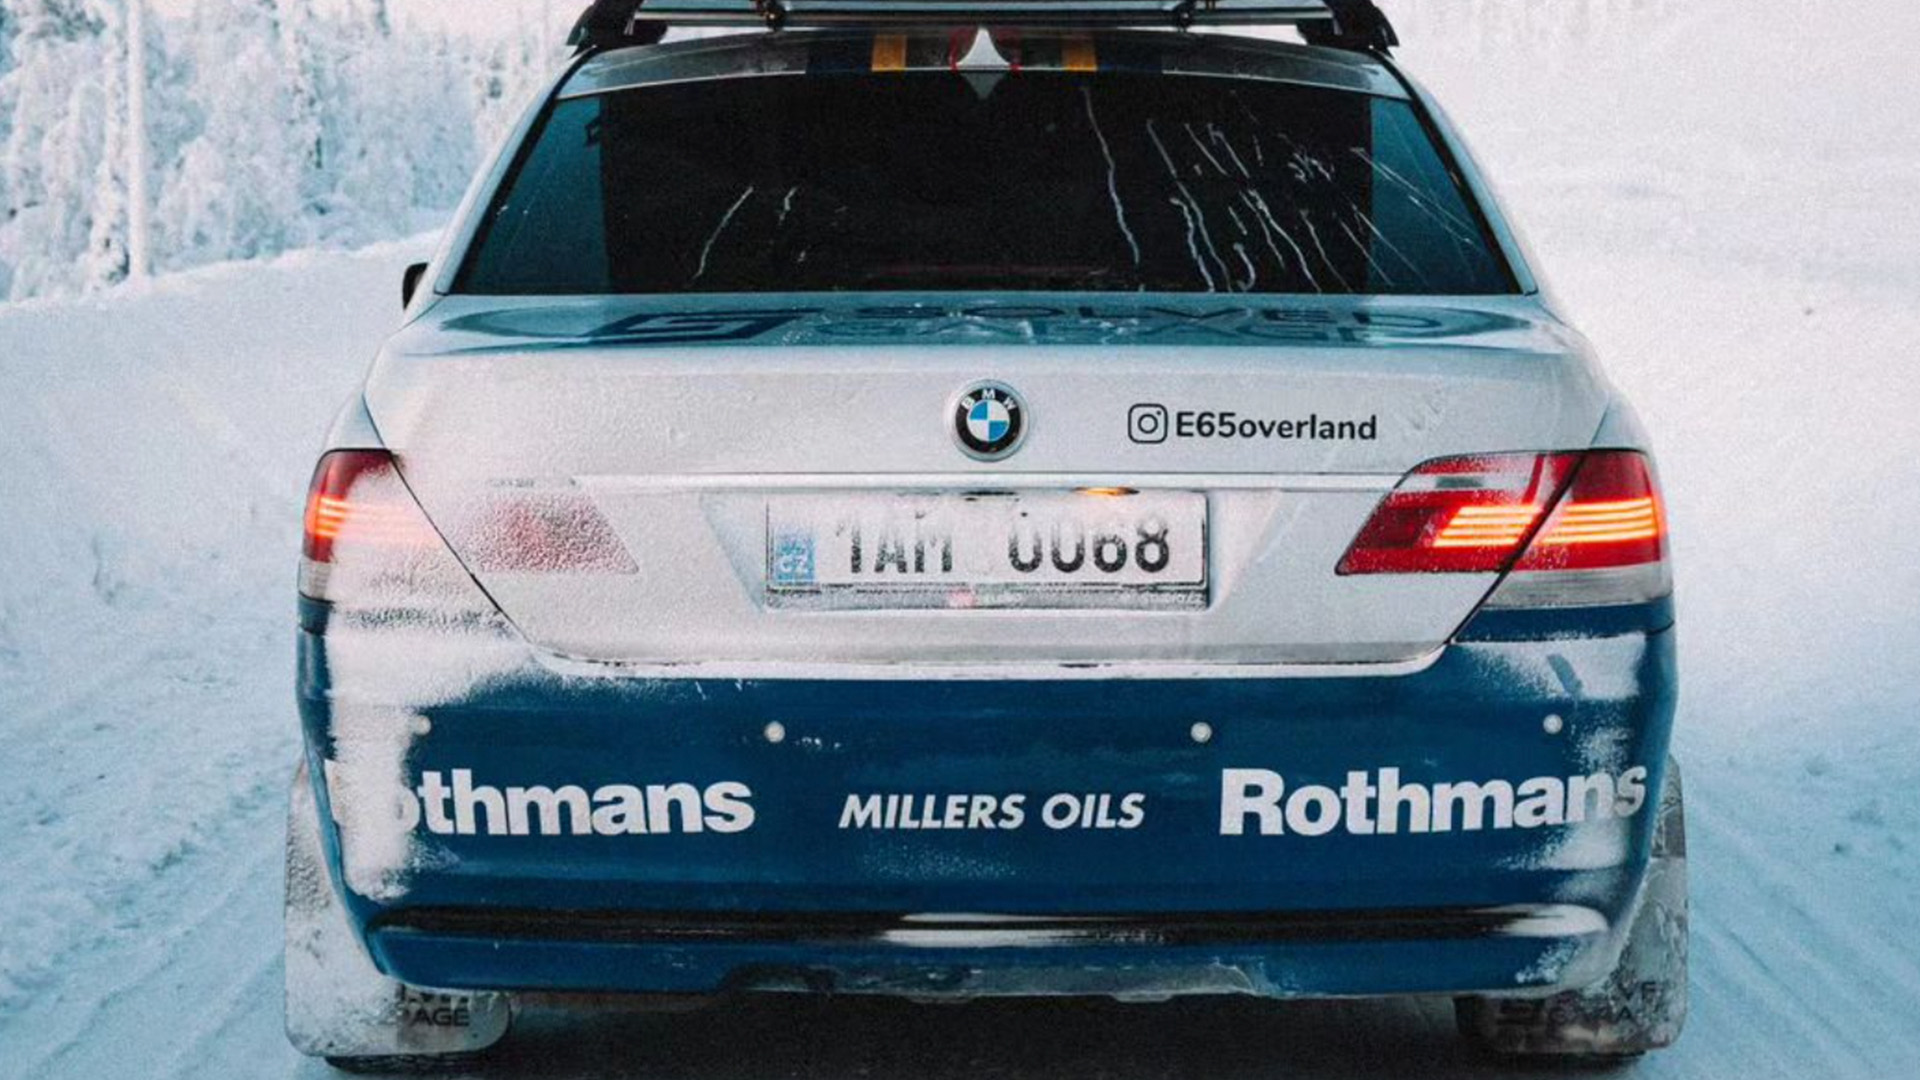 Vista trasera del BMW Serie 7 4x4 cubierto de nieve, mostrando detalle de luces y alerón.